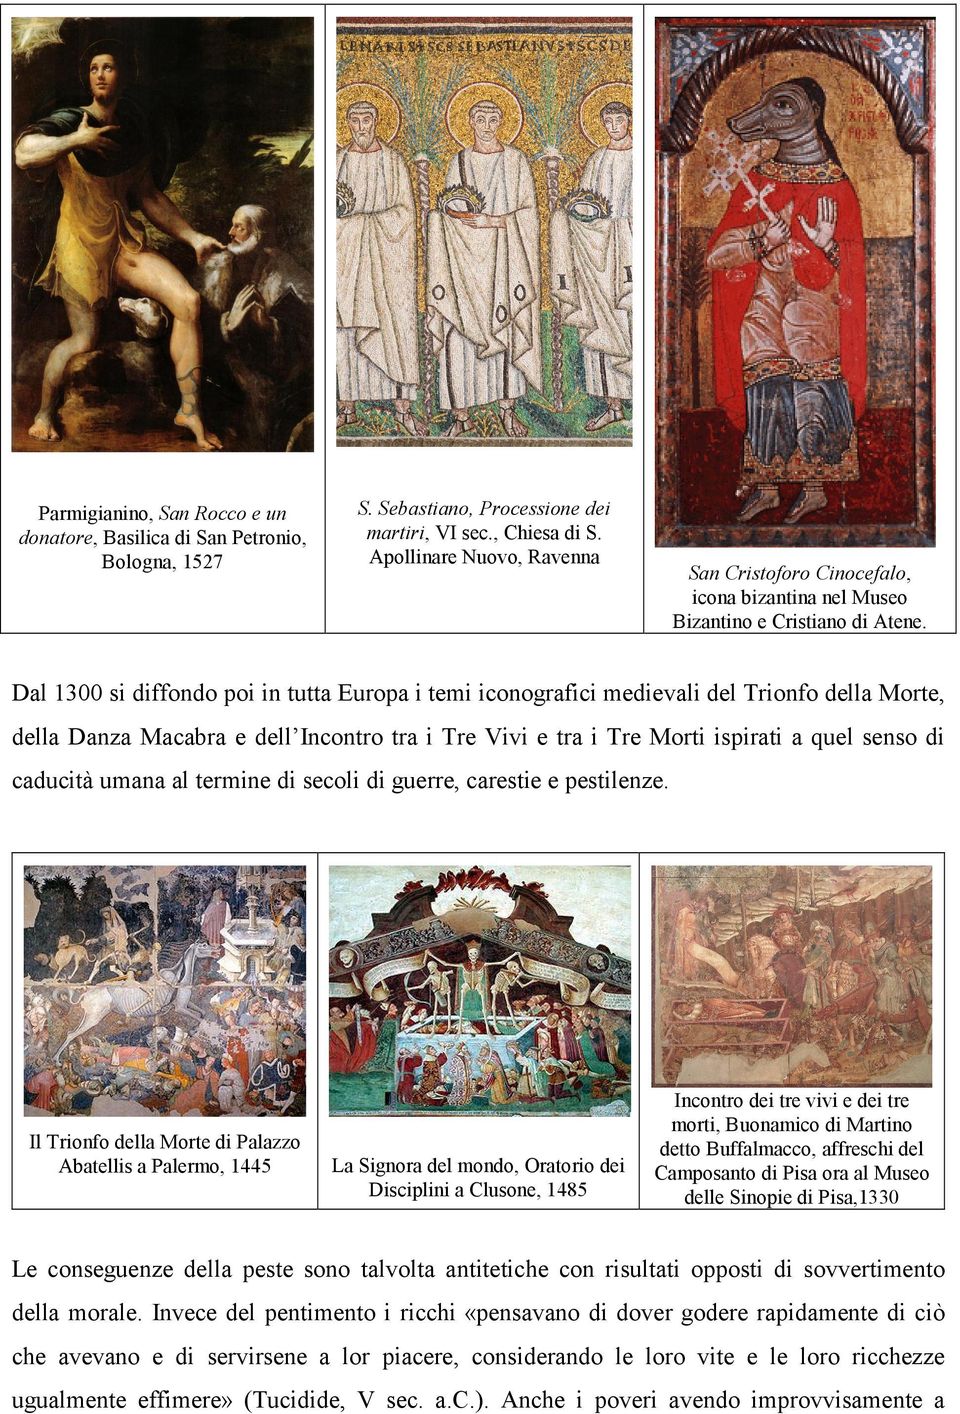 Dal 1300 si diffondo poi in tutta Europa i temi iconografici medievali del Trionfo della Morte, della Danza Macabra e dell Incontro tra i Tre Vivi e tra i Tre Morti ispirati a quel senso di caducità